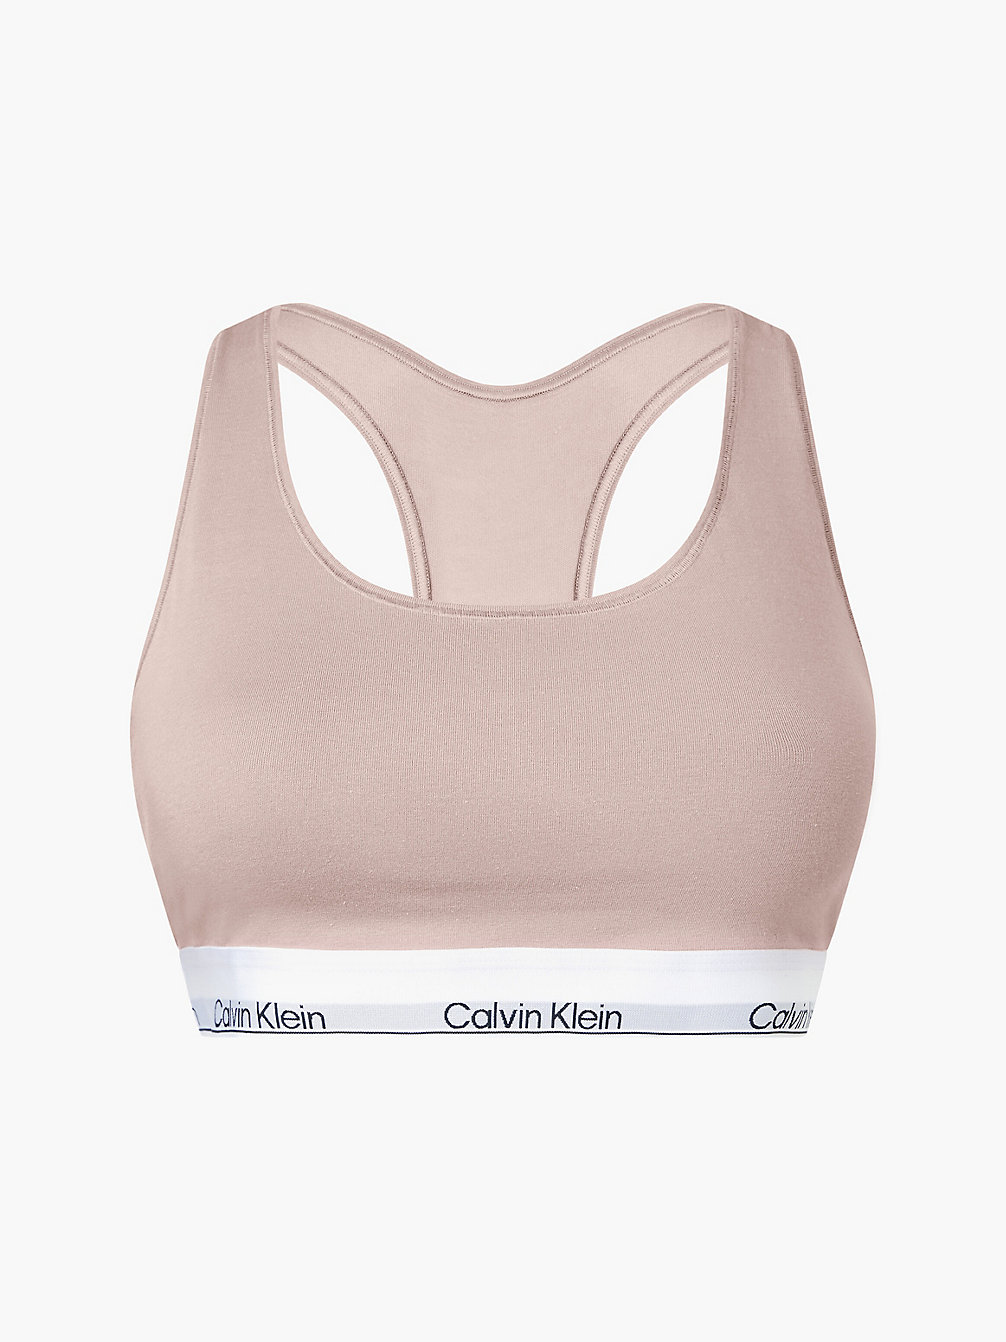 CEDAR > Бралетт плюс-сайз – Modern Cotton > undefined Женщины - Calvin Klein